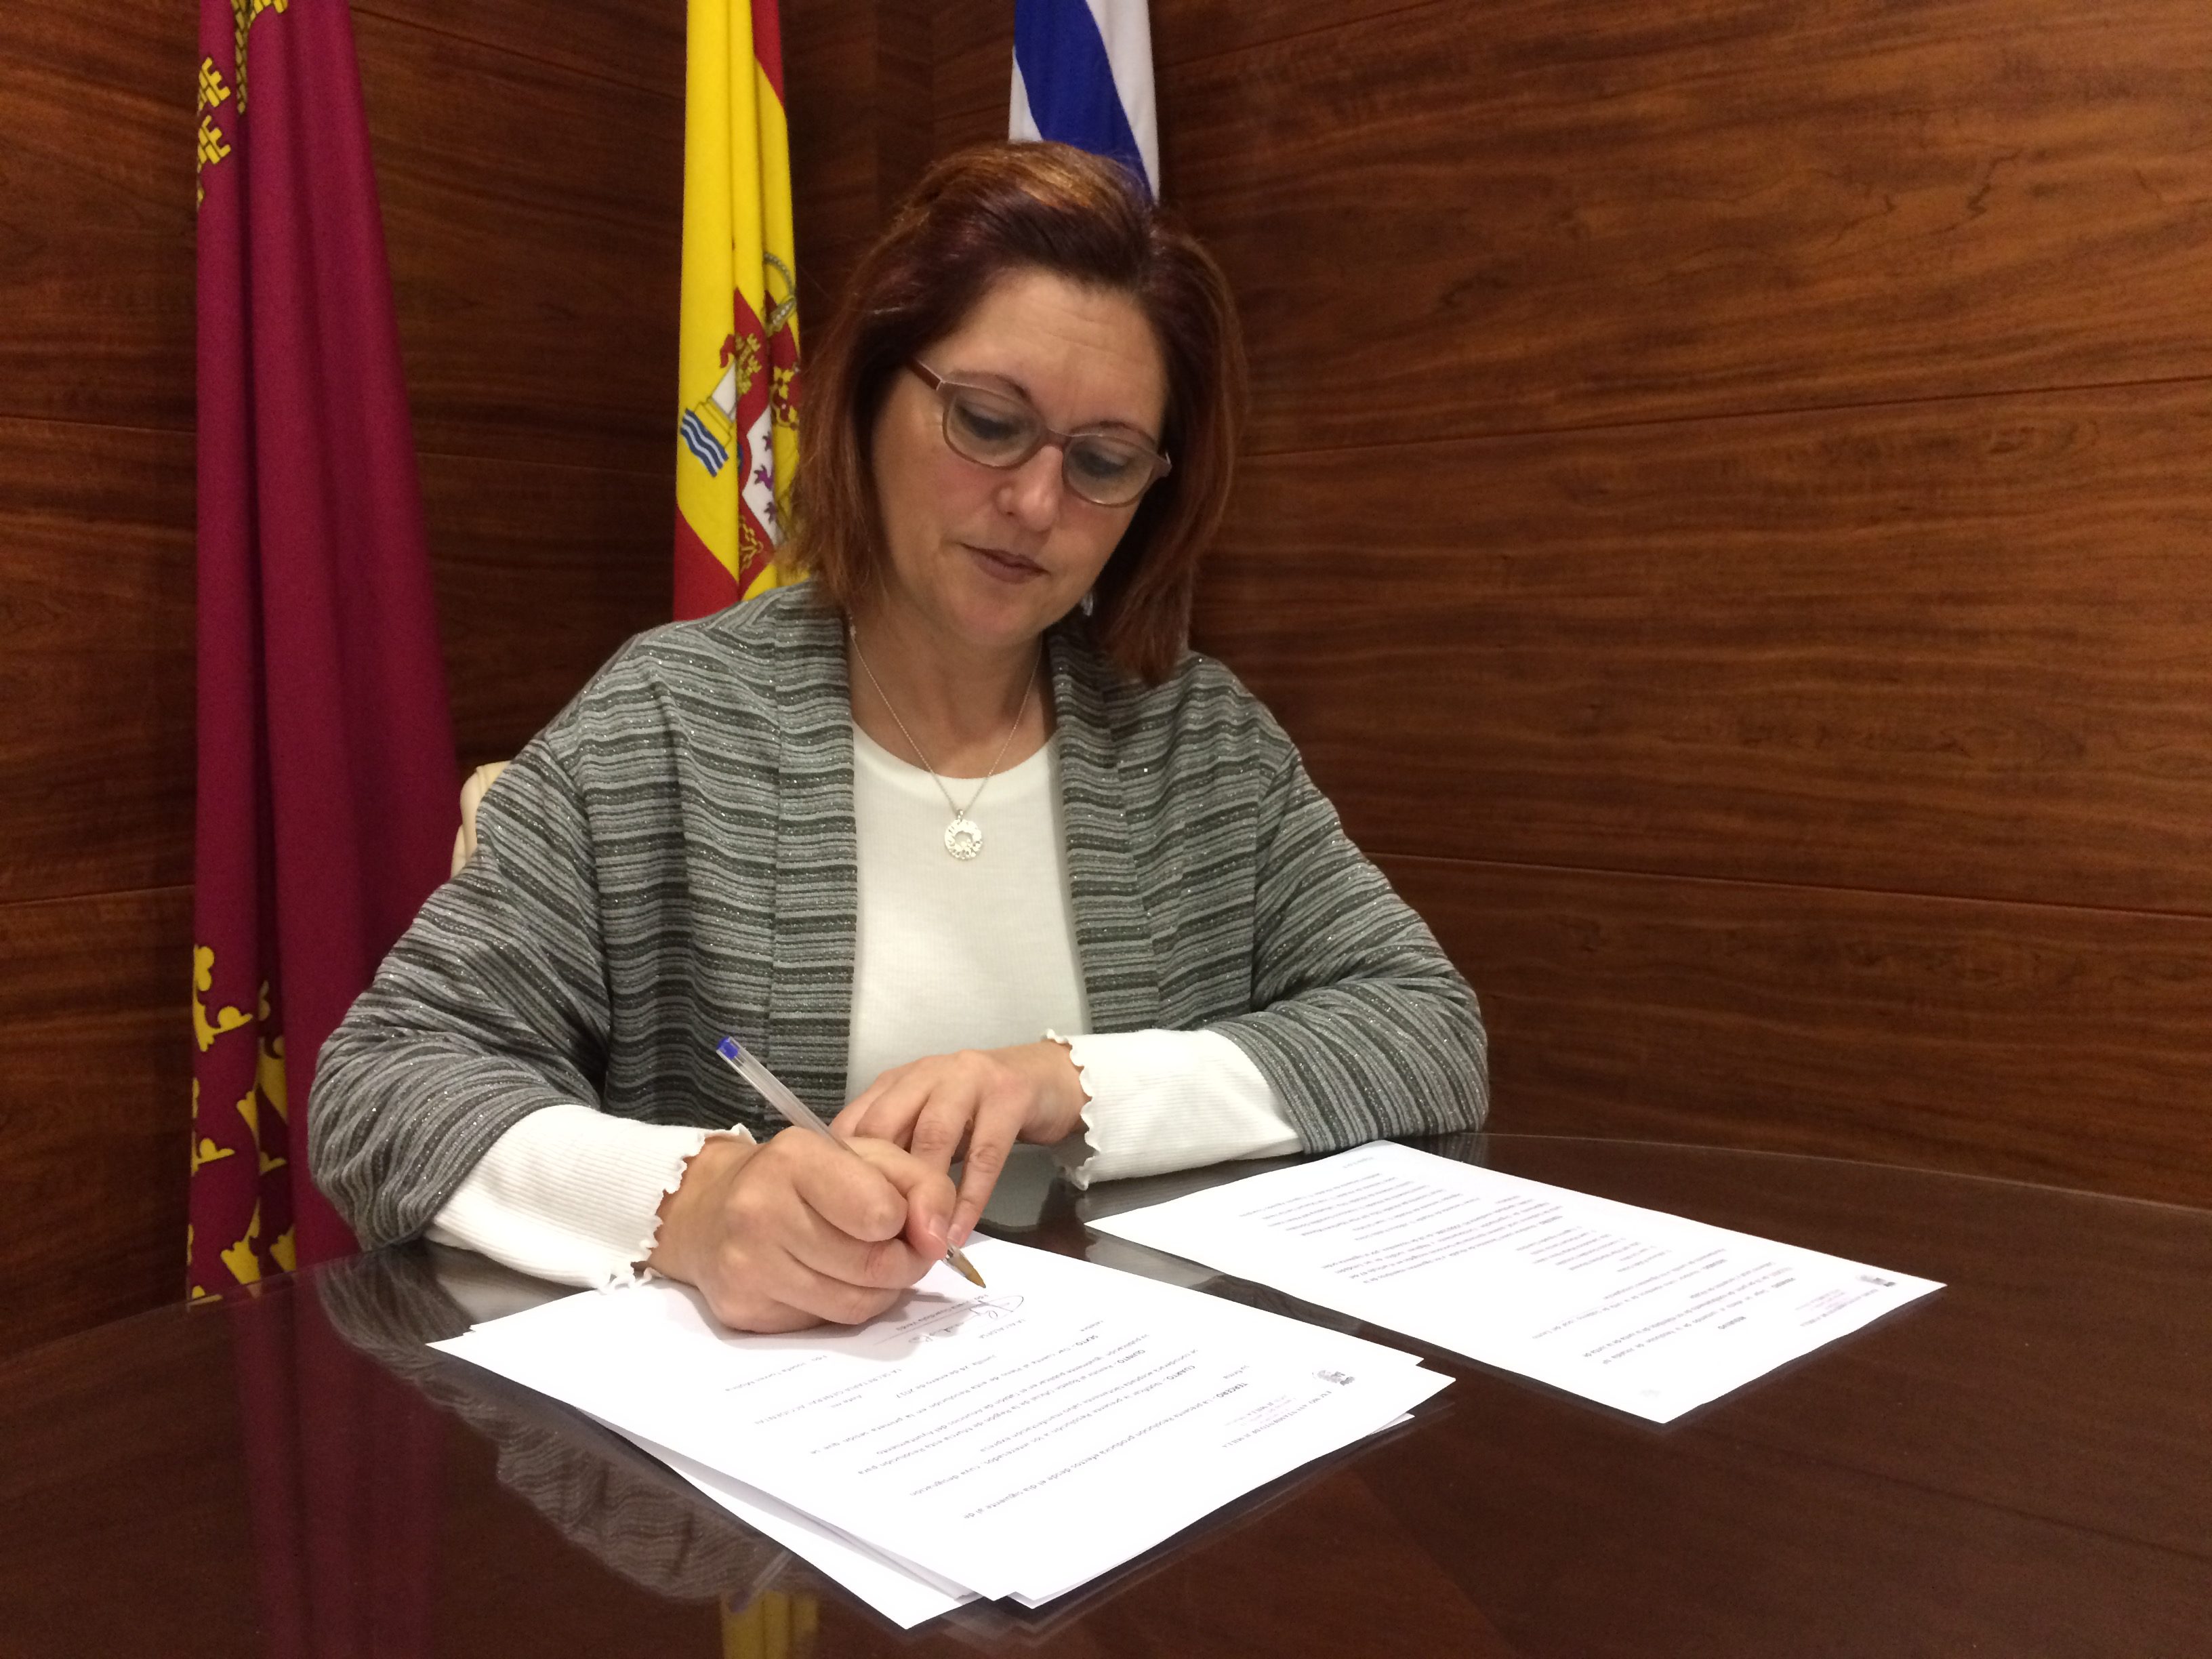 La alcaldesa reparte las competencias tras la dimisión de Cande Fernández Medina